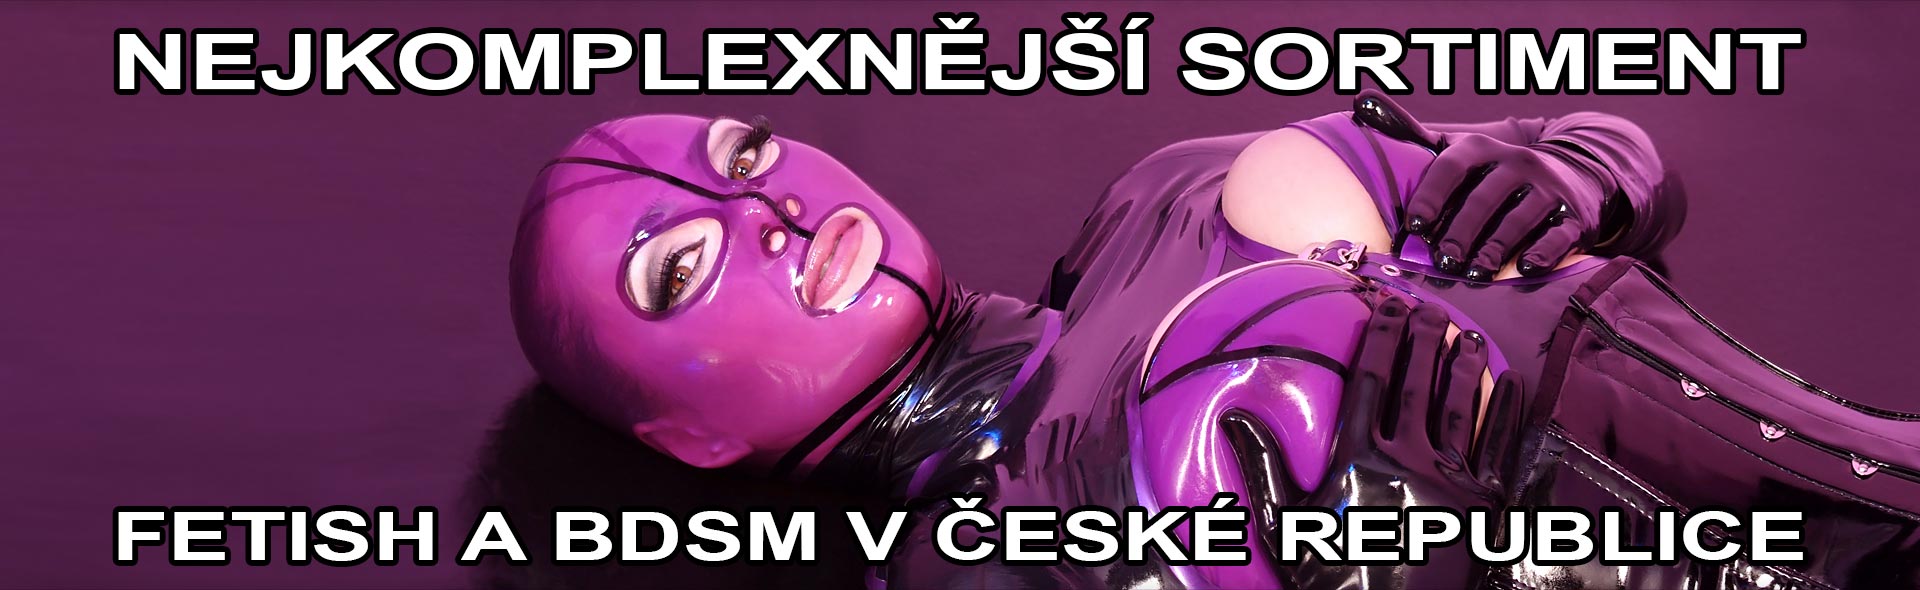 MH Sexshop - nejkomplexnější sortiment fetish a BDSM v České republice